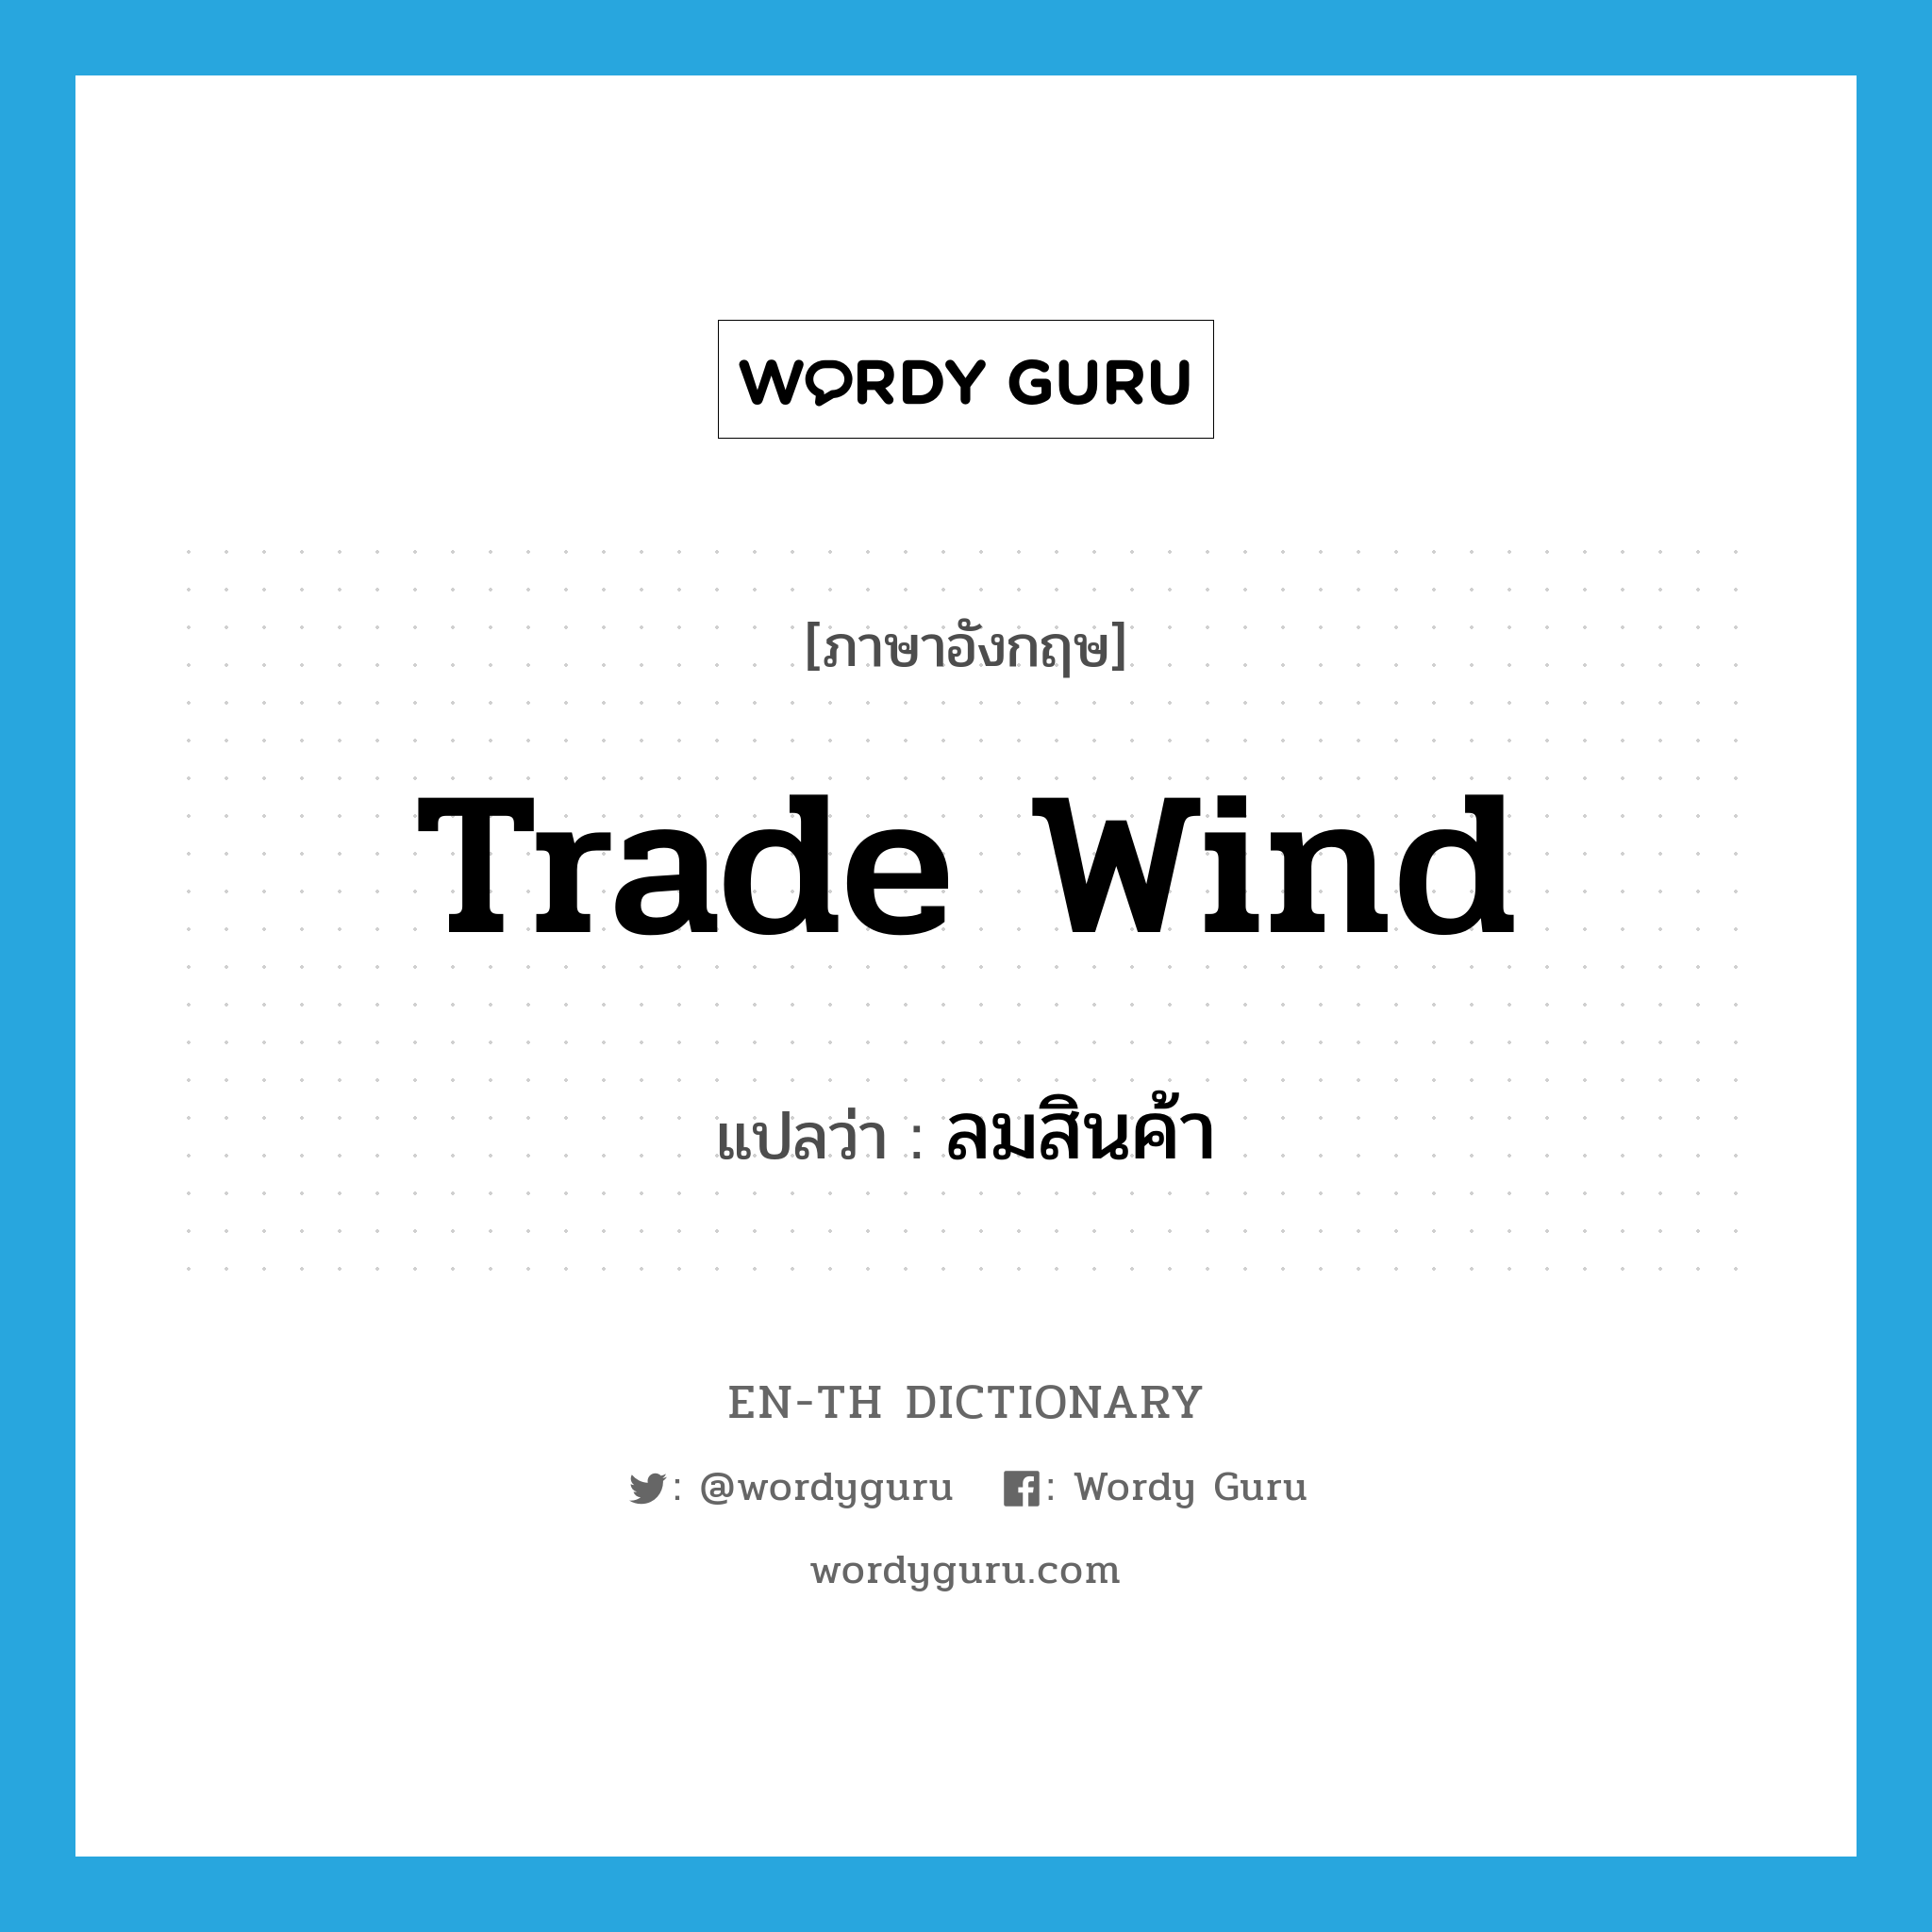 trade wind แปลว่า?, คำศัพท์ภาษาอังกฤษ trade wind แปลว่า ลมสินค้า ประเภท N หมวด N